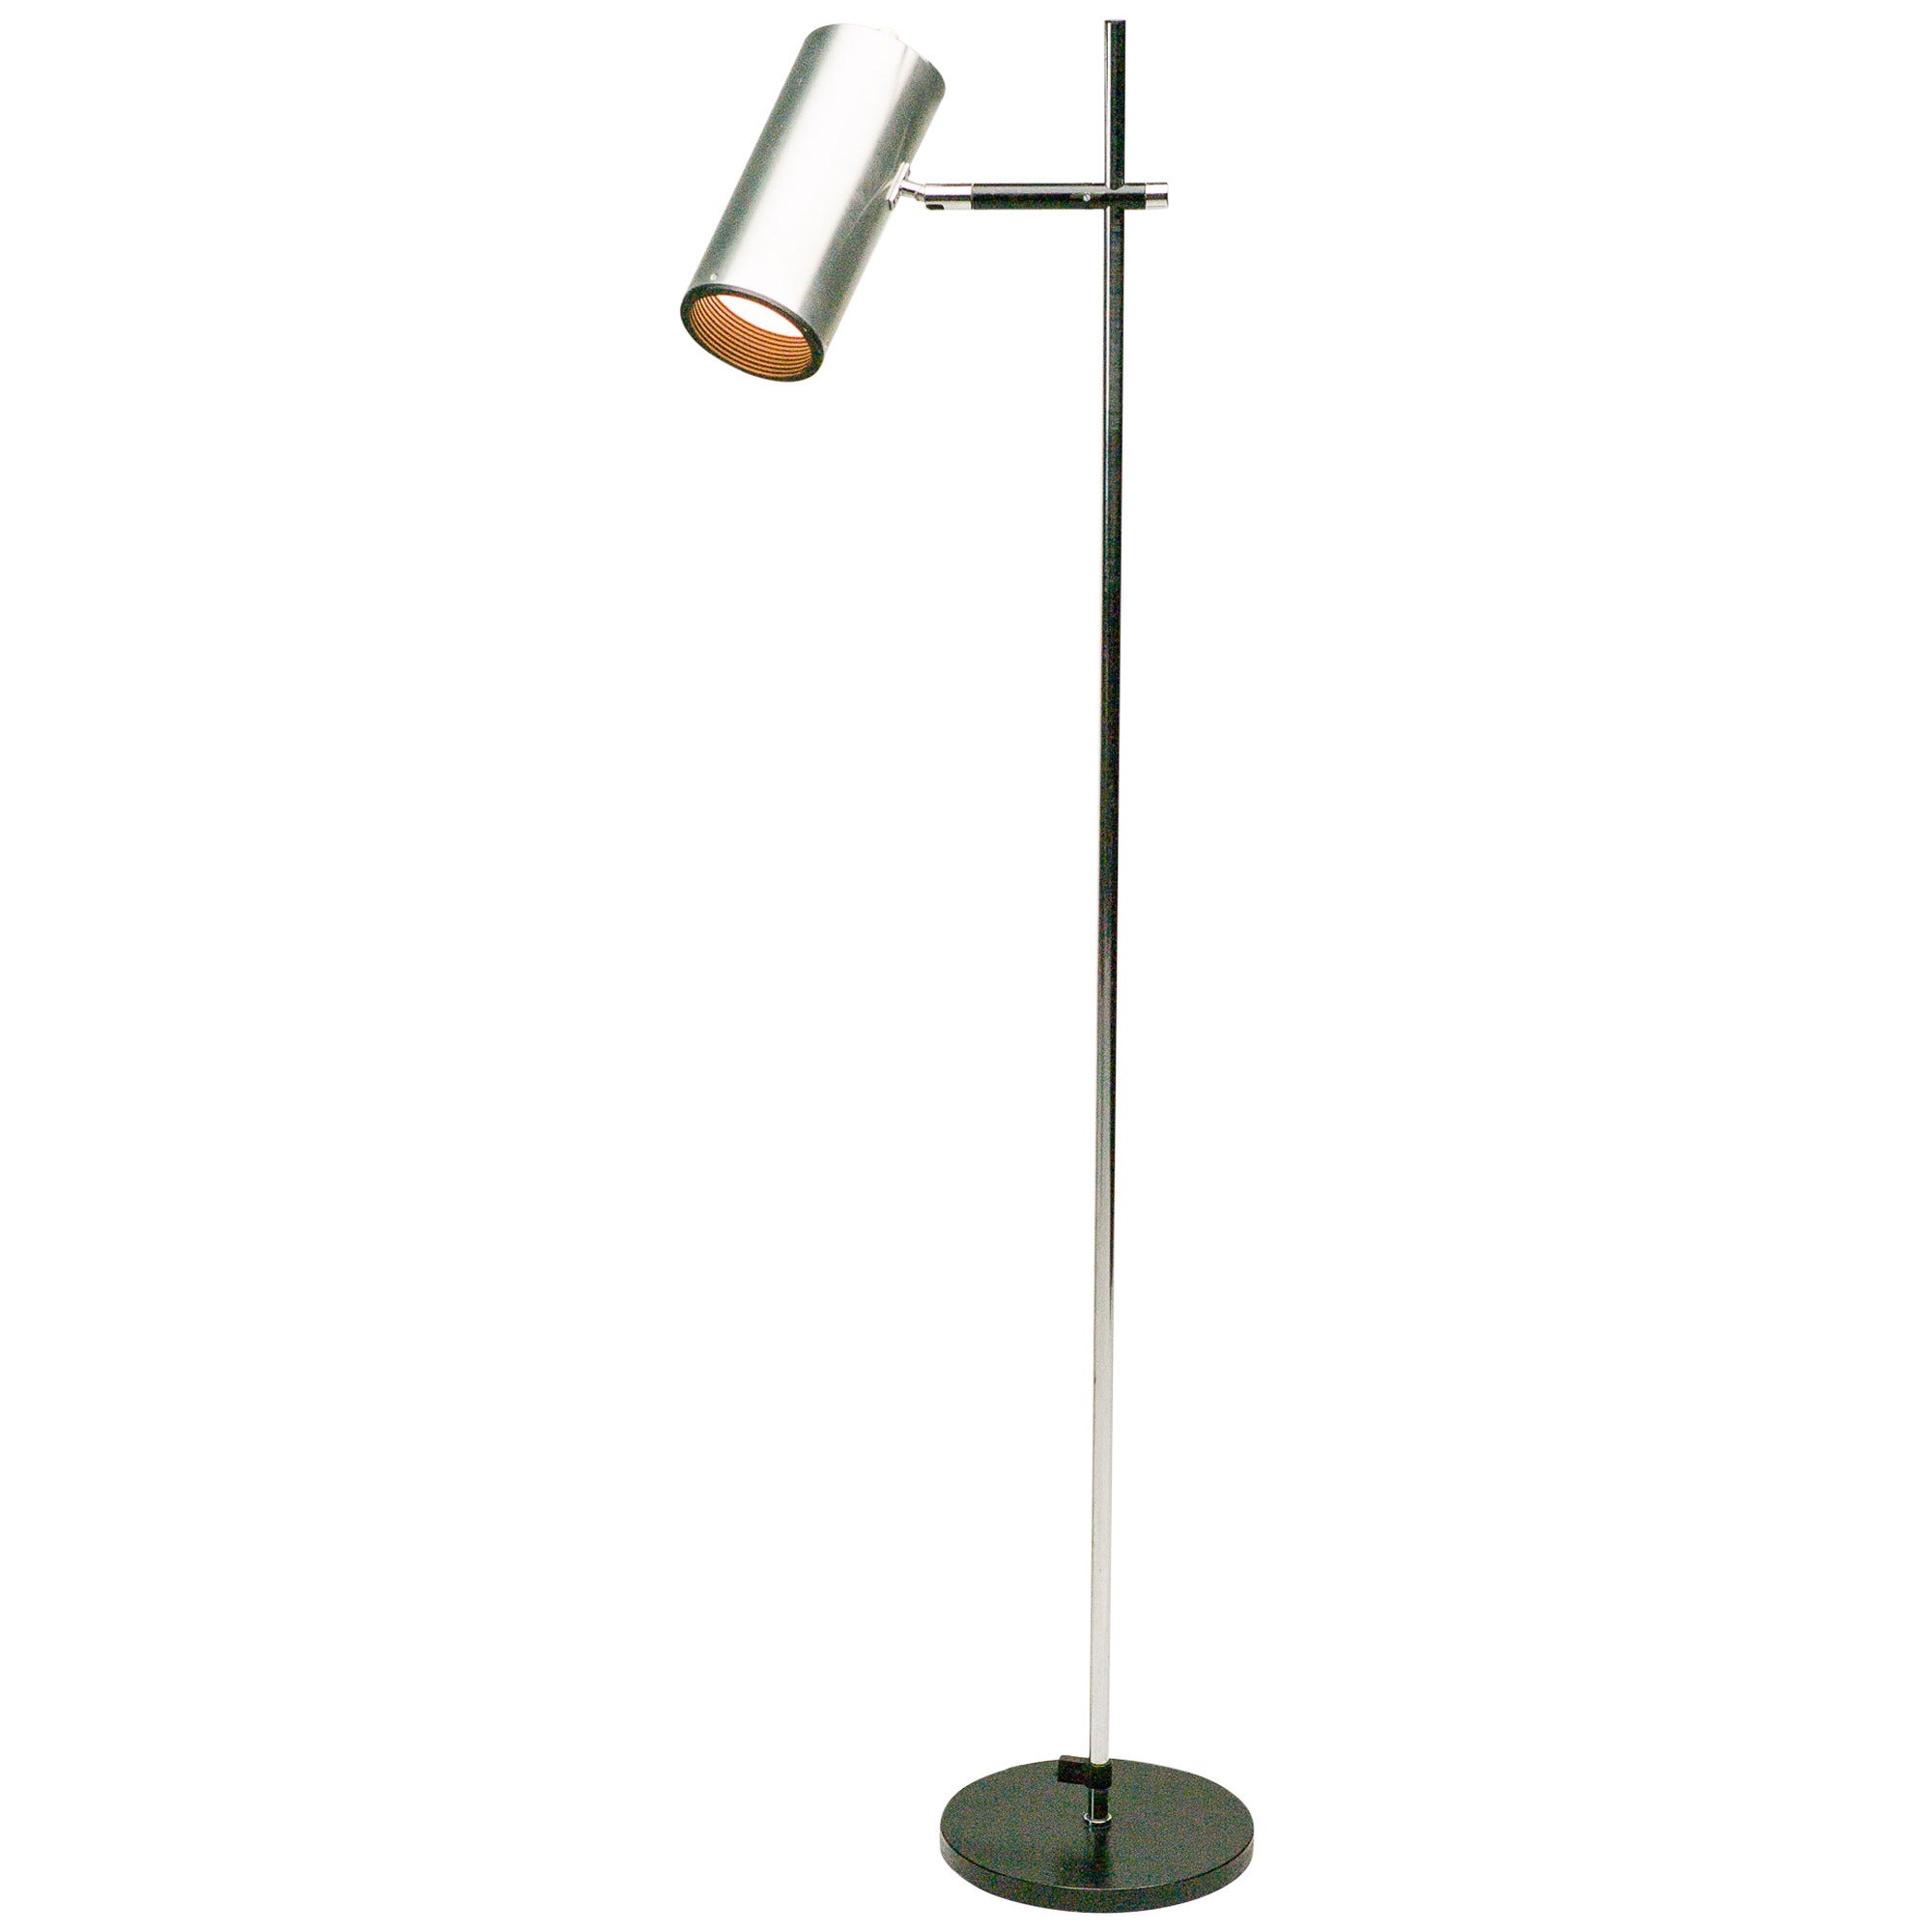 Maria Pergay Stainless Steel Floor Lamp